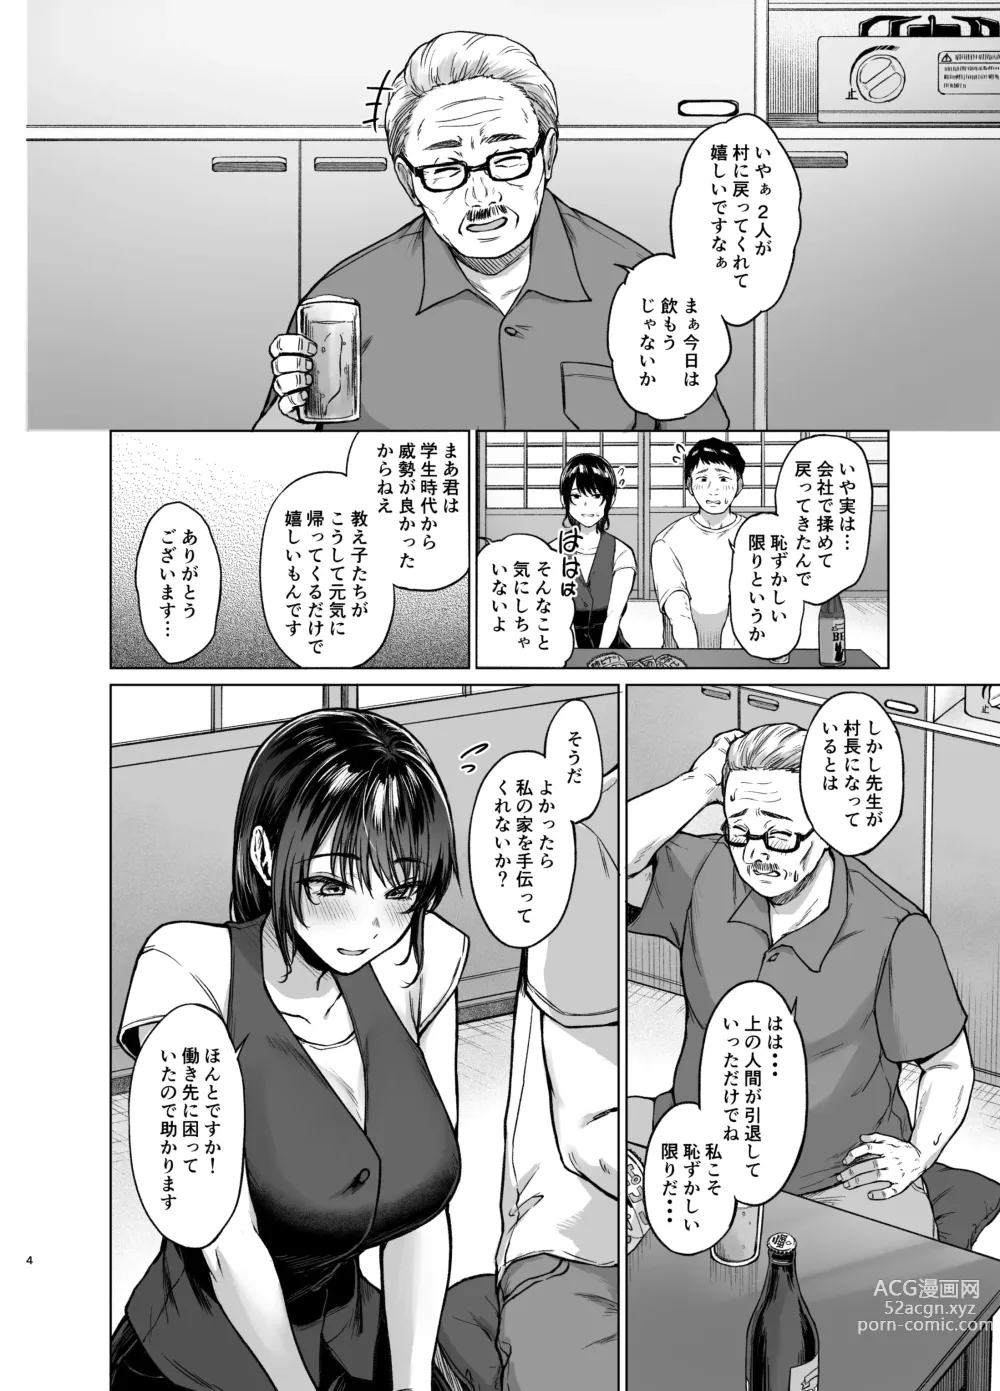 Page 4 of doujinshi Natsu Inaka Kaeri no Otetsudai